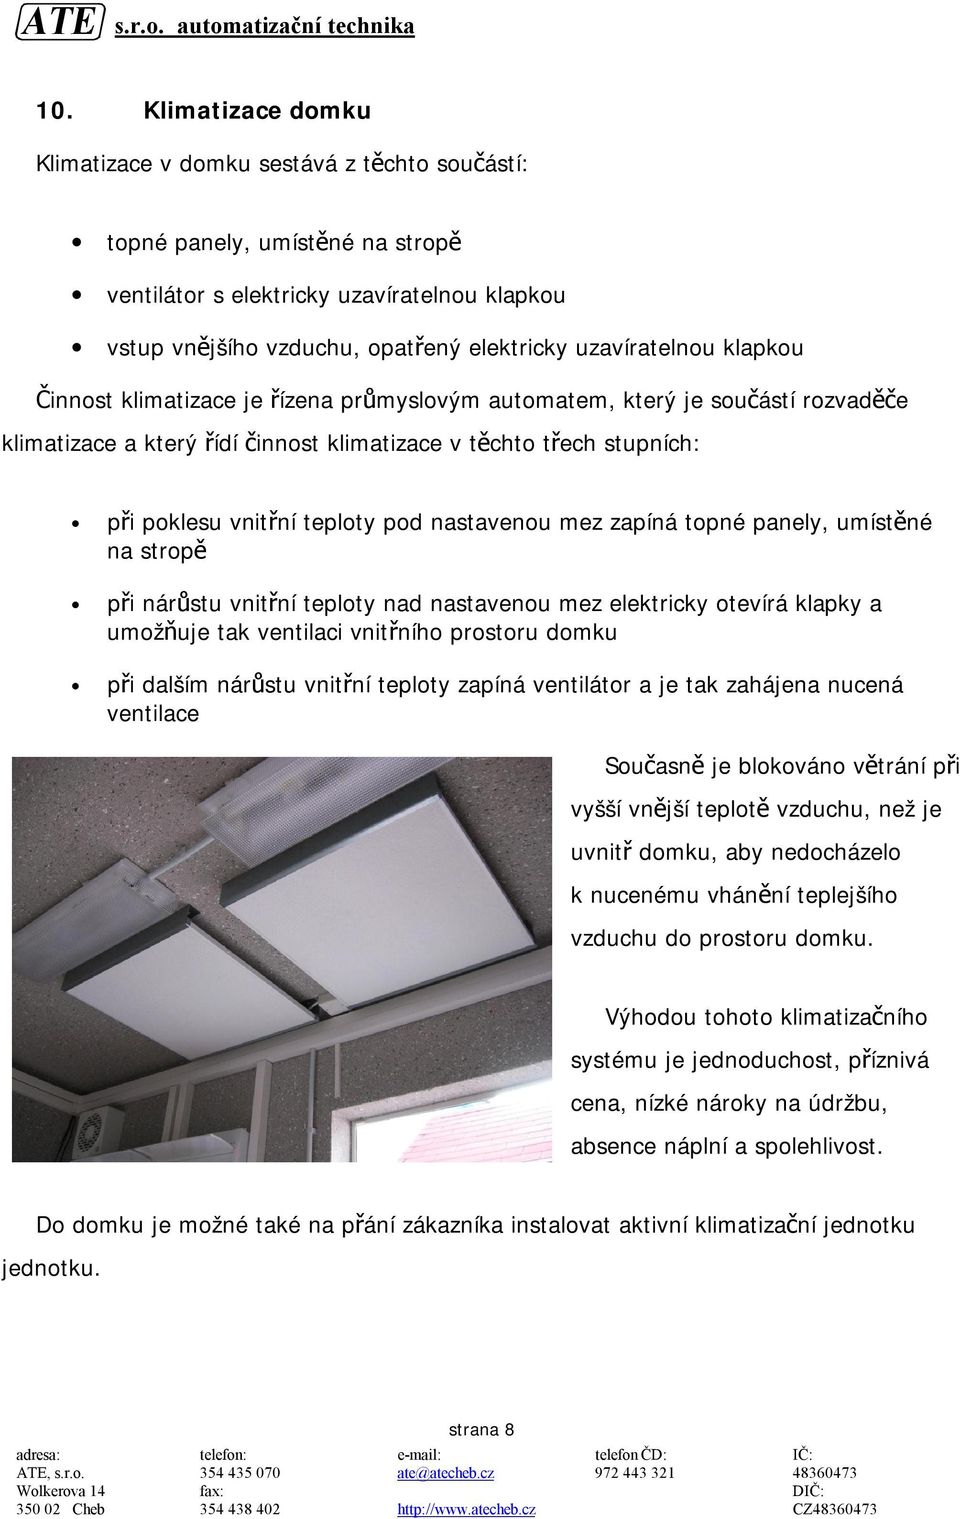 teploty pod nastavenou mez zapíná topné panely, umístěné na stropě při nárůstu vnitřní teploty nad nastavenou mez elektricky otevírá klapky a umožňuje tak ventilaci vnitřního prostoru domku při